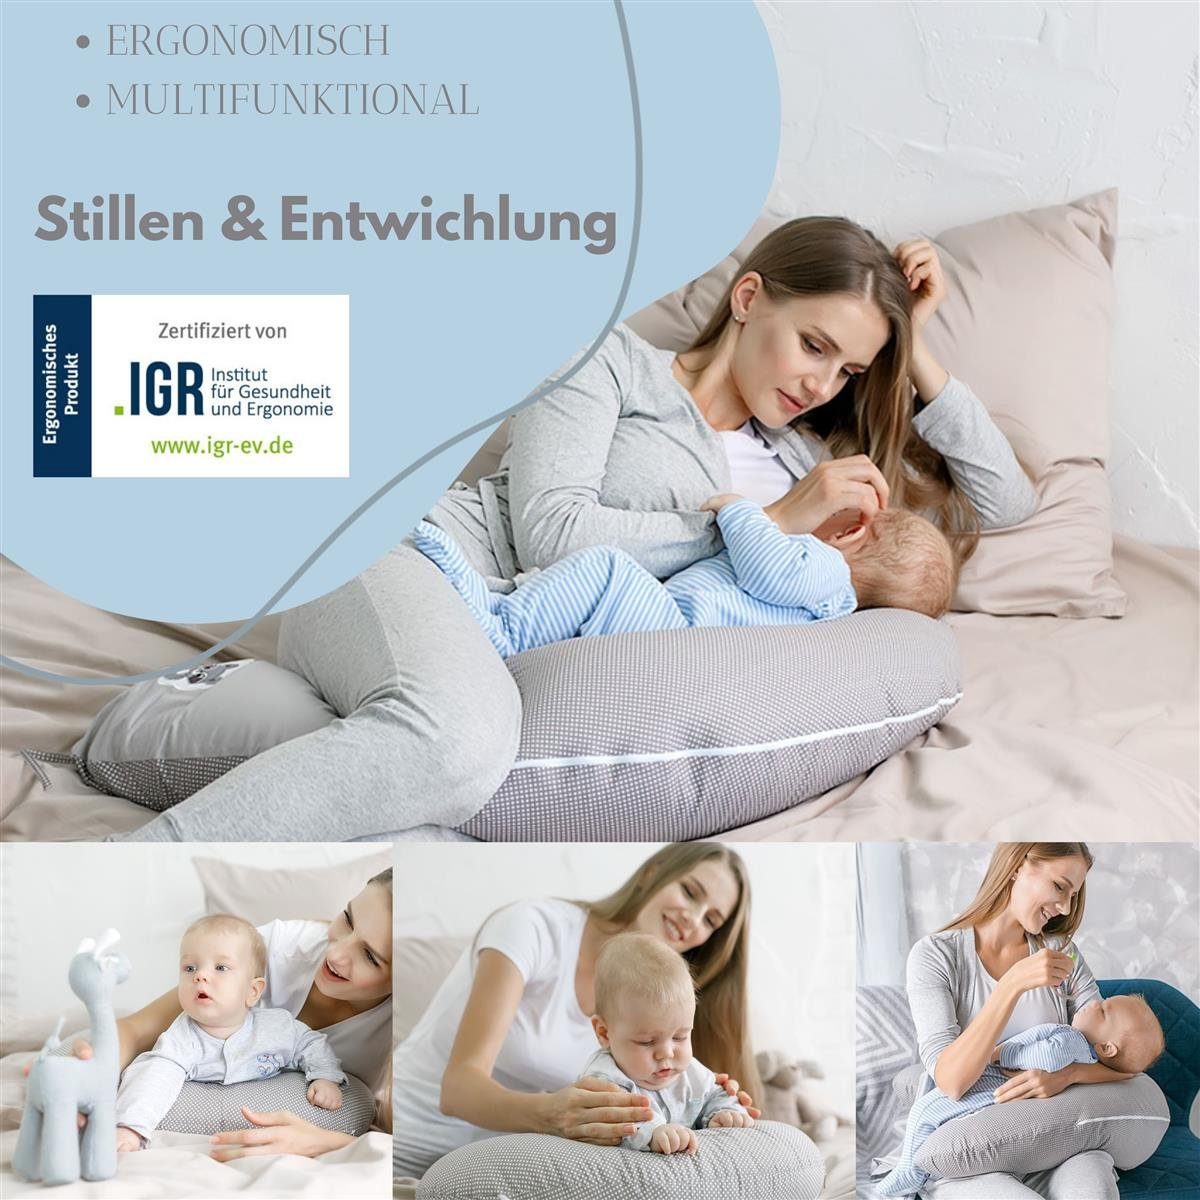 SEI Design Stillkissen Seitenschläferkissen Bezug Schwangerschaftskissen EPS Baumwolle Bezug, Babynestchen 100% mit mit Mikroperlen